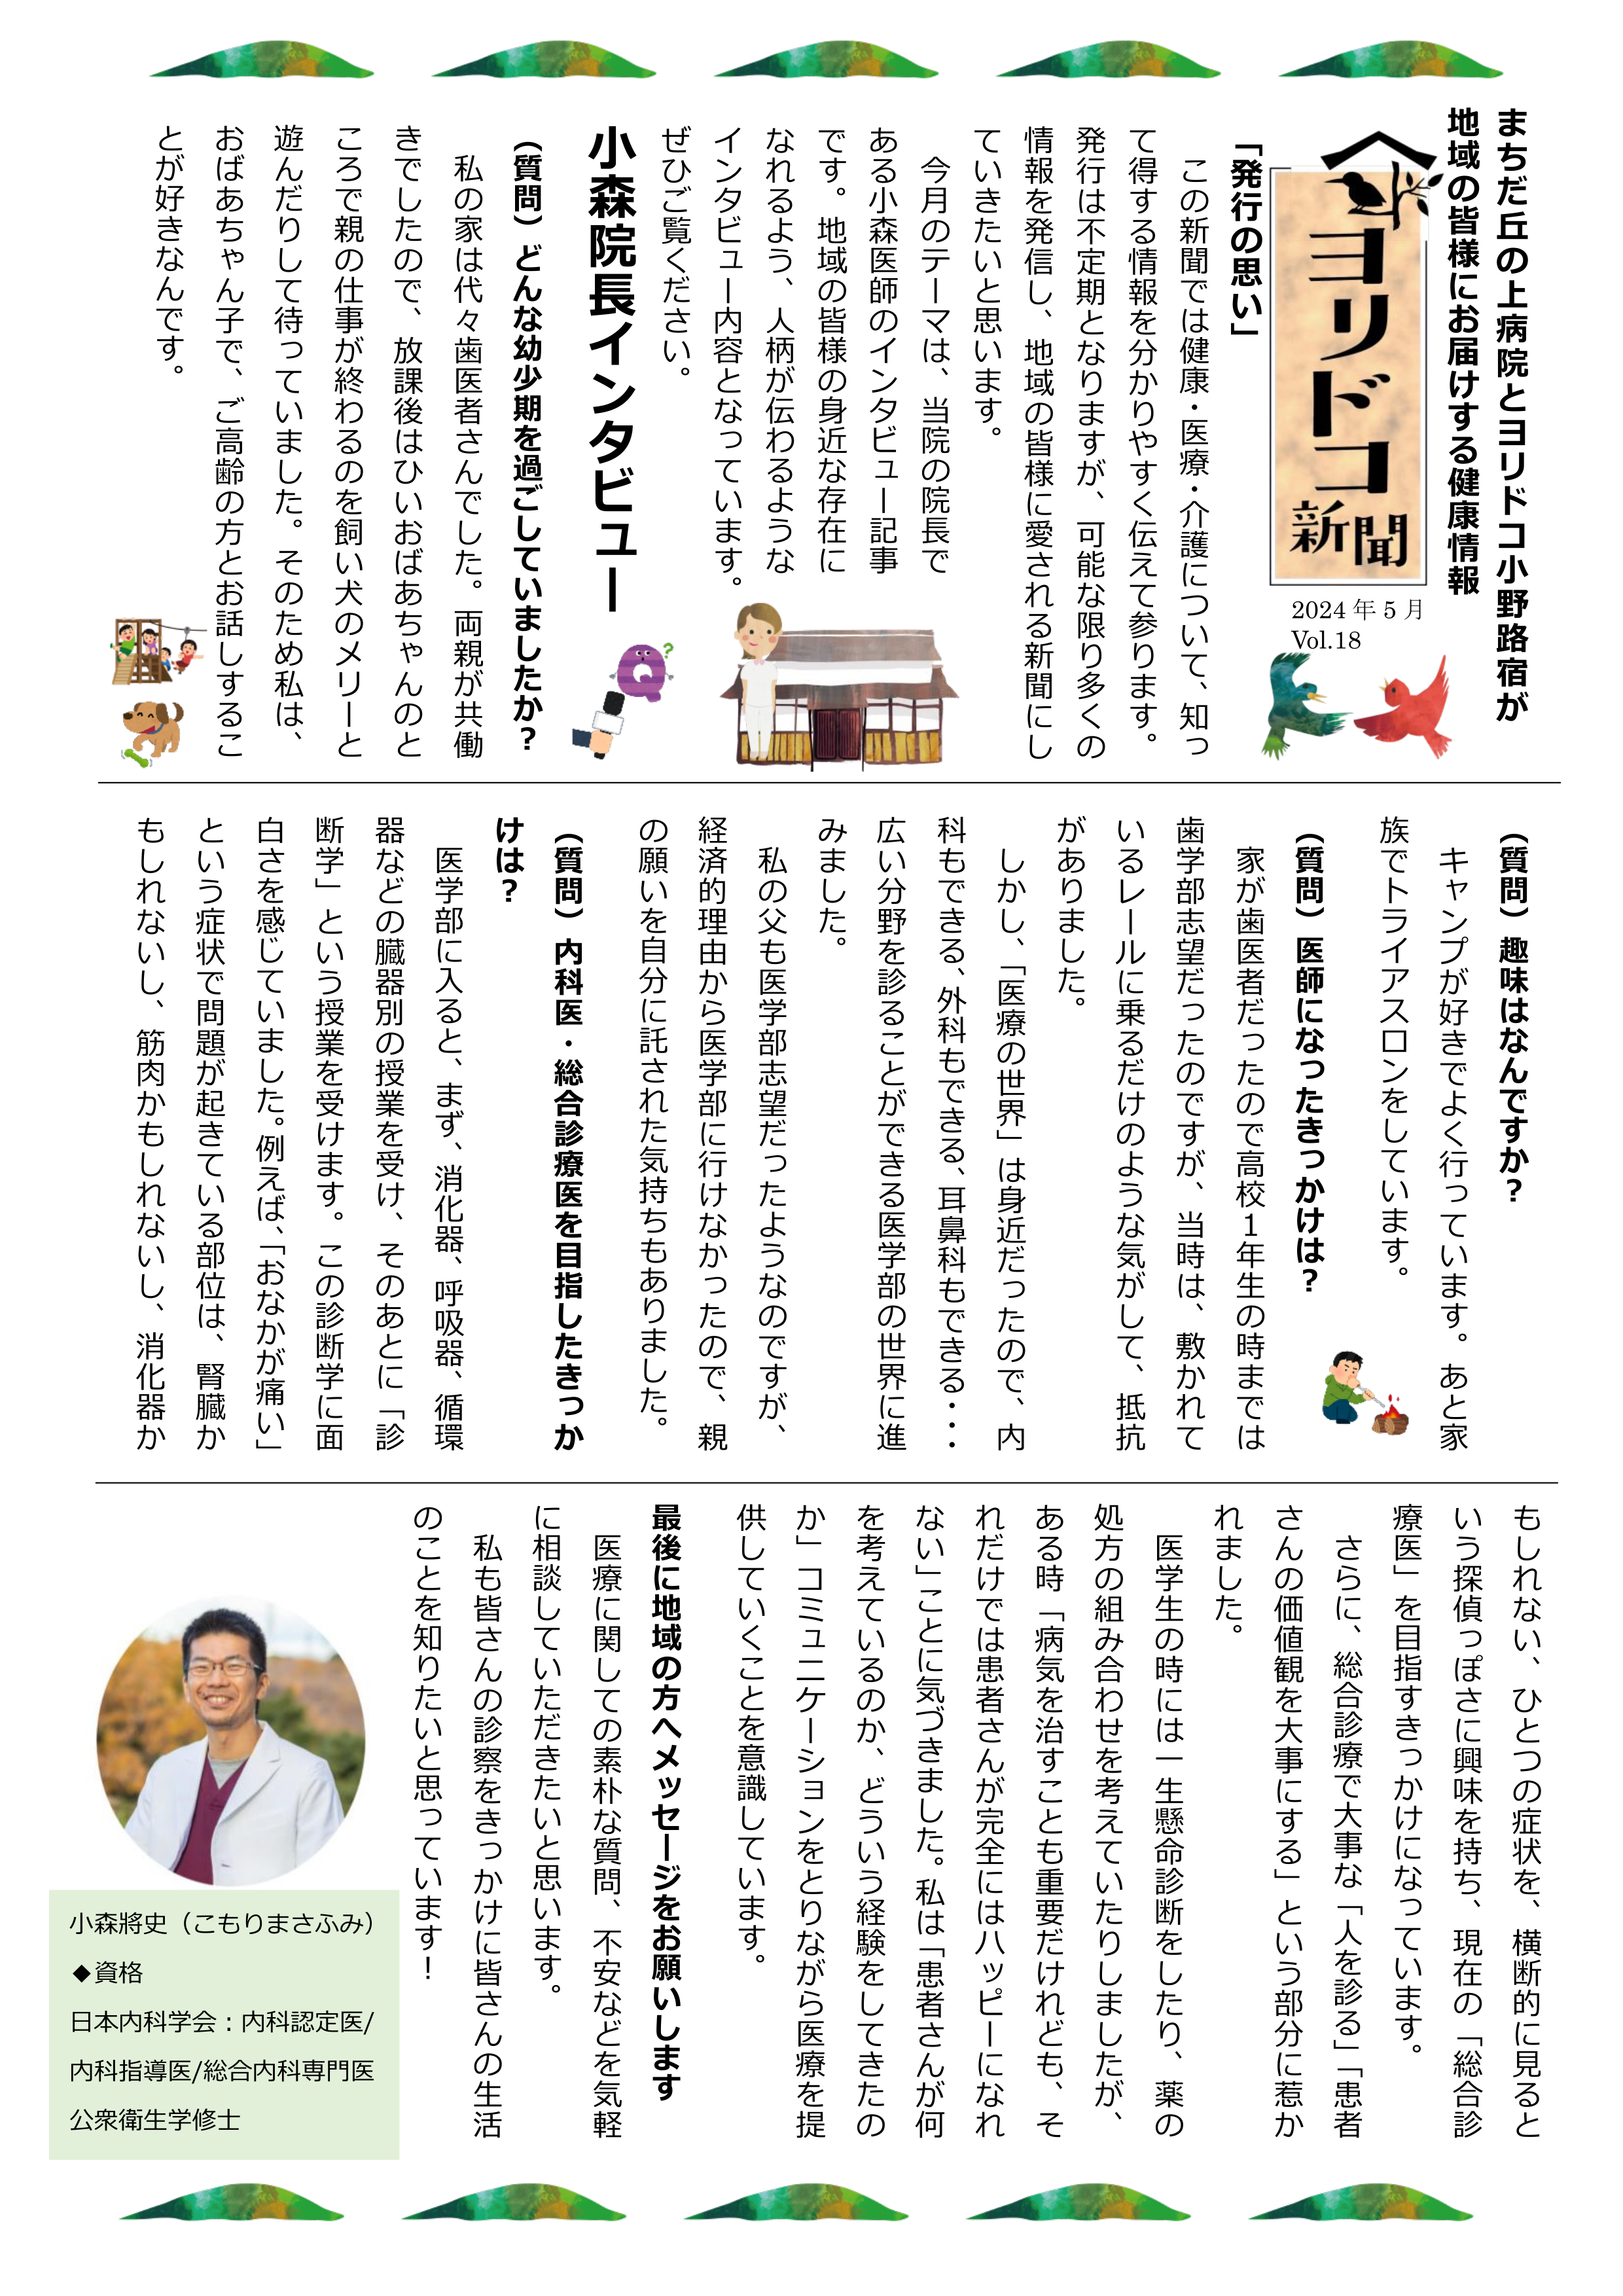 ヨリドコ新聞(PDF)へのリンク